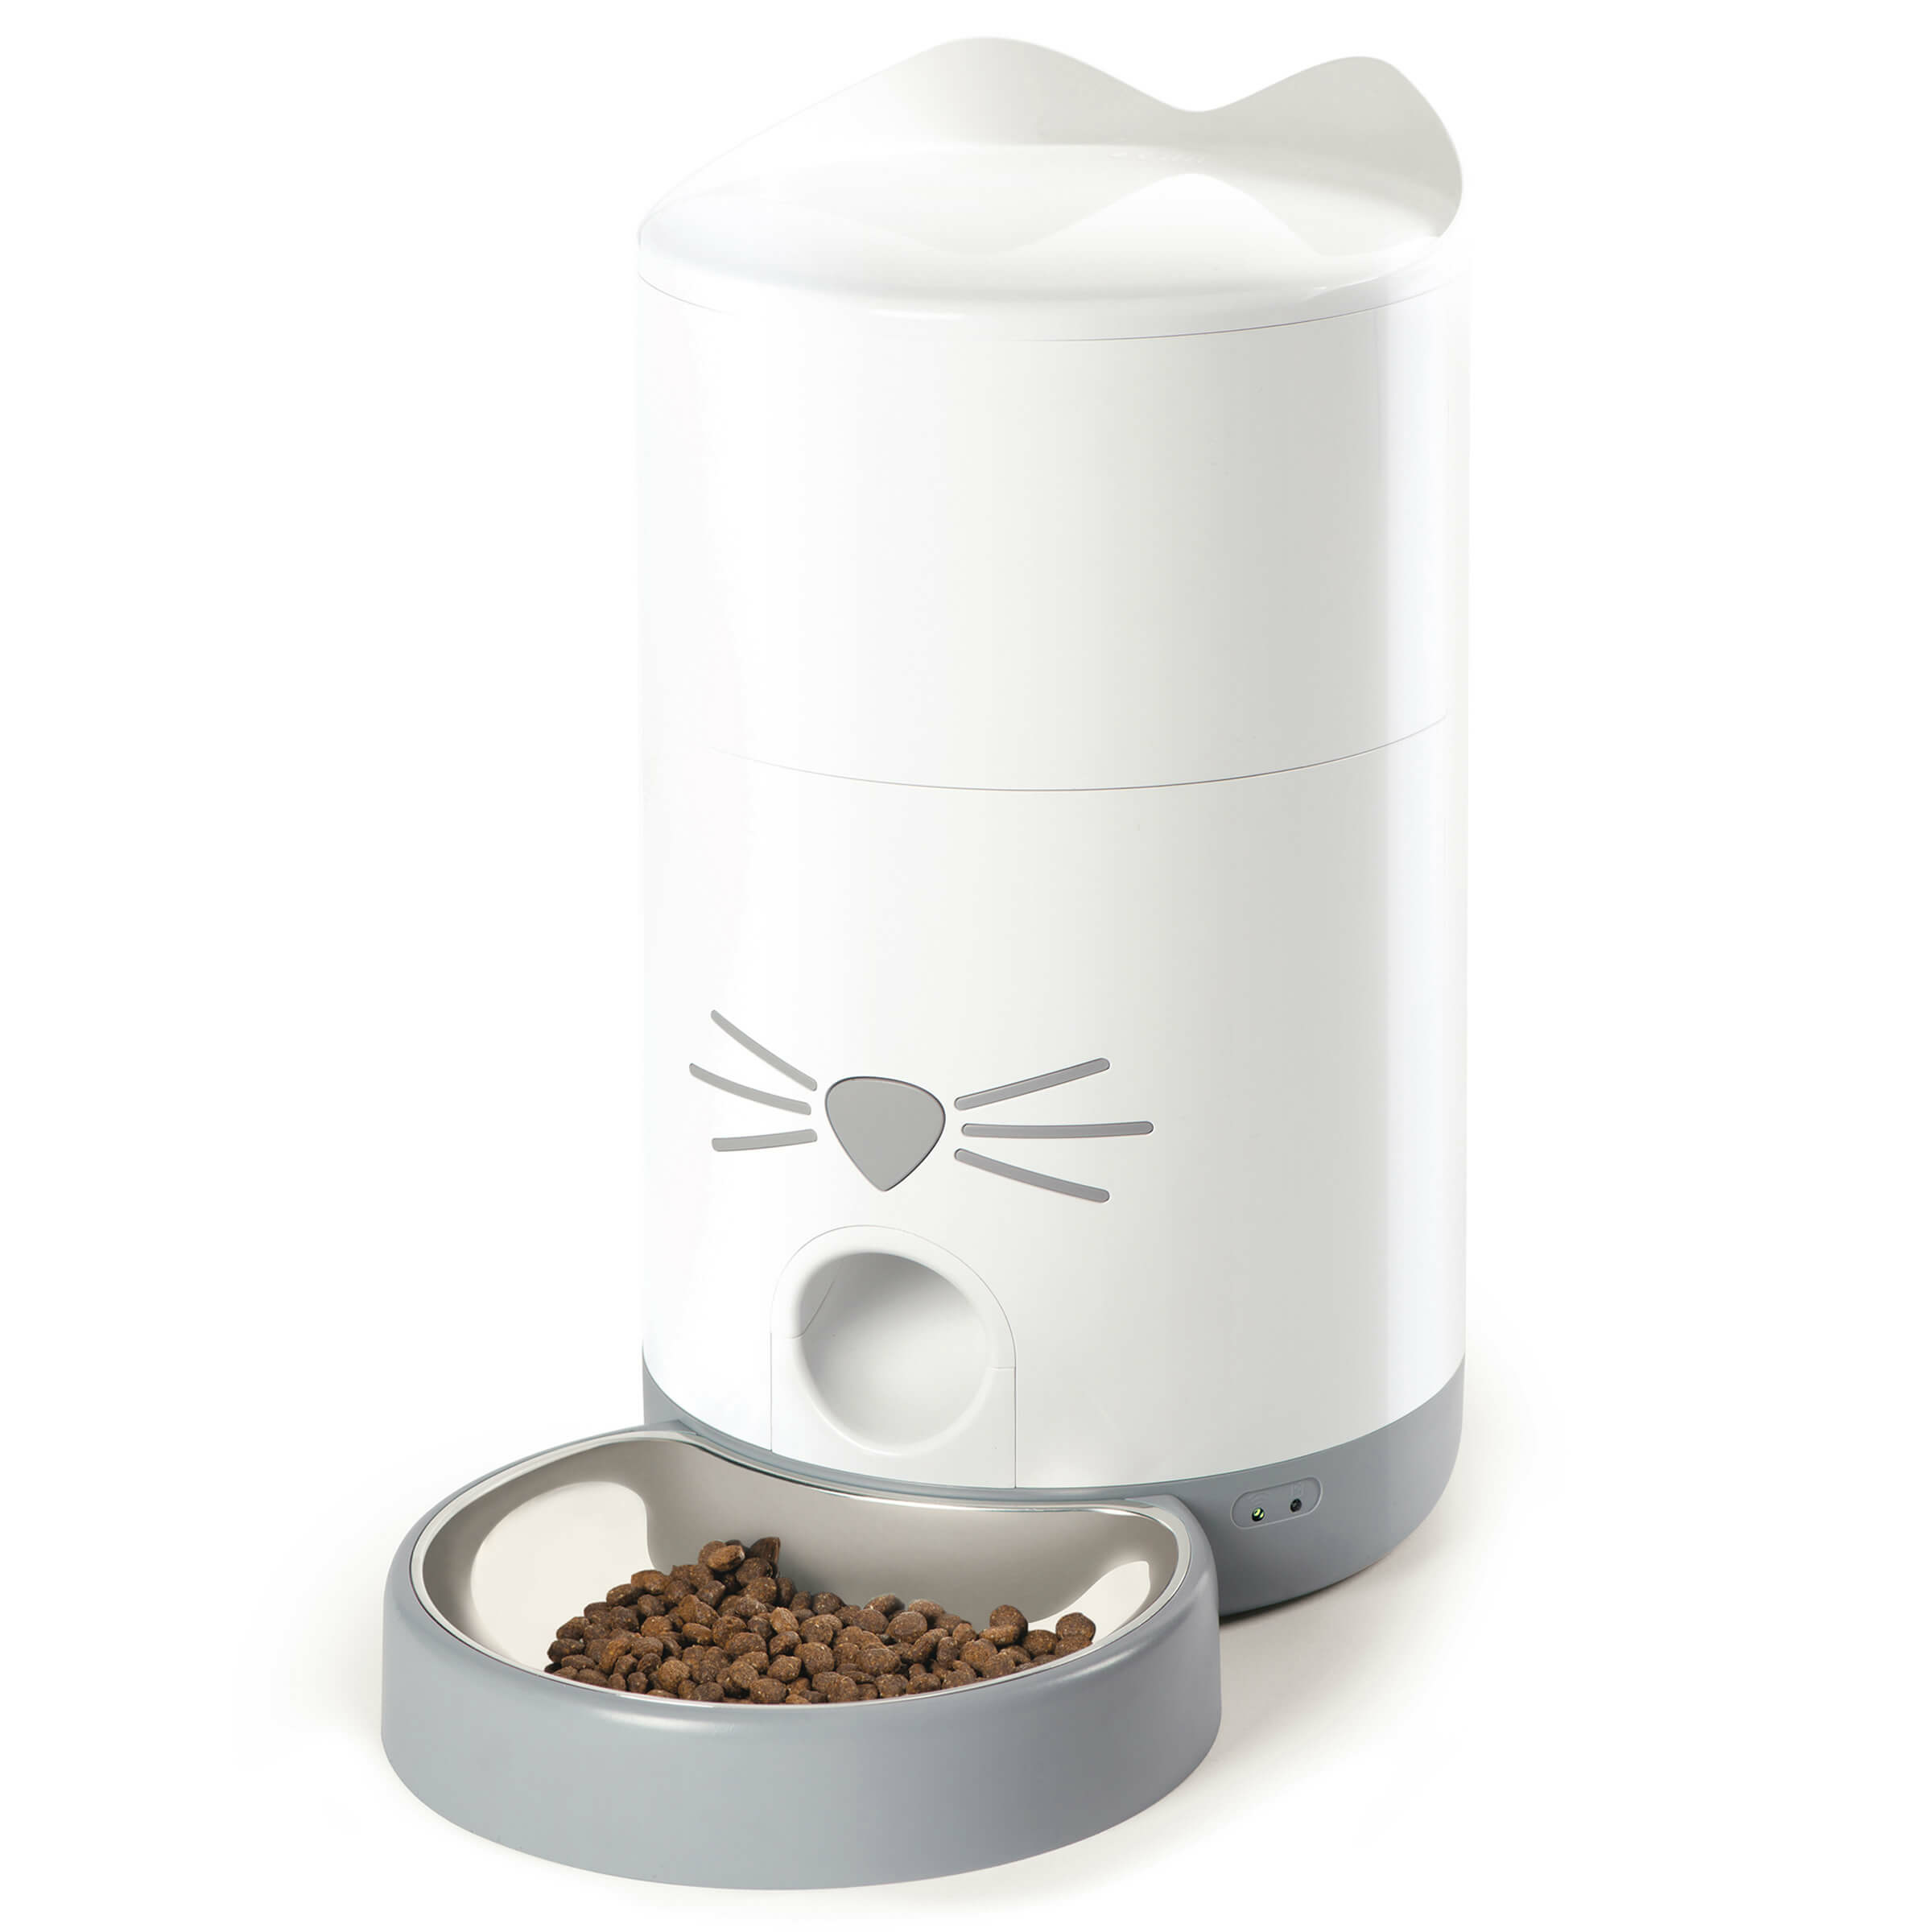 Catit Futterautomat Pixi Smart Feeder für Katzen ab CHF 149.90